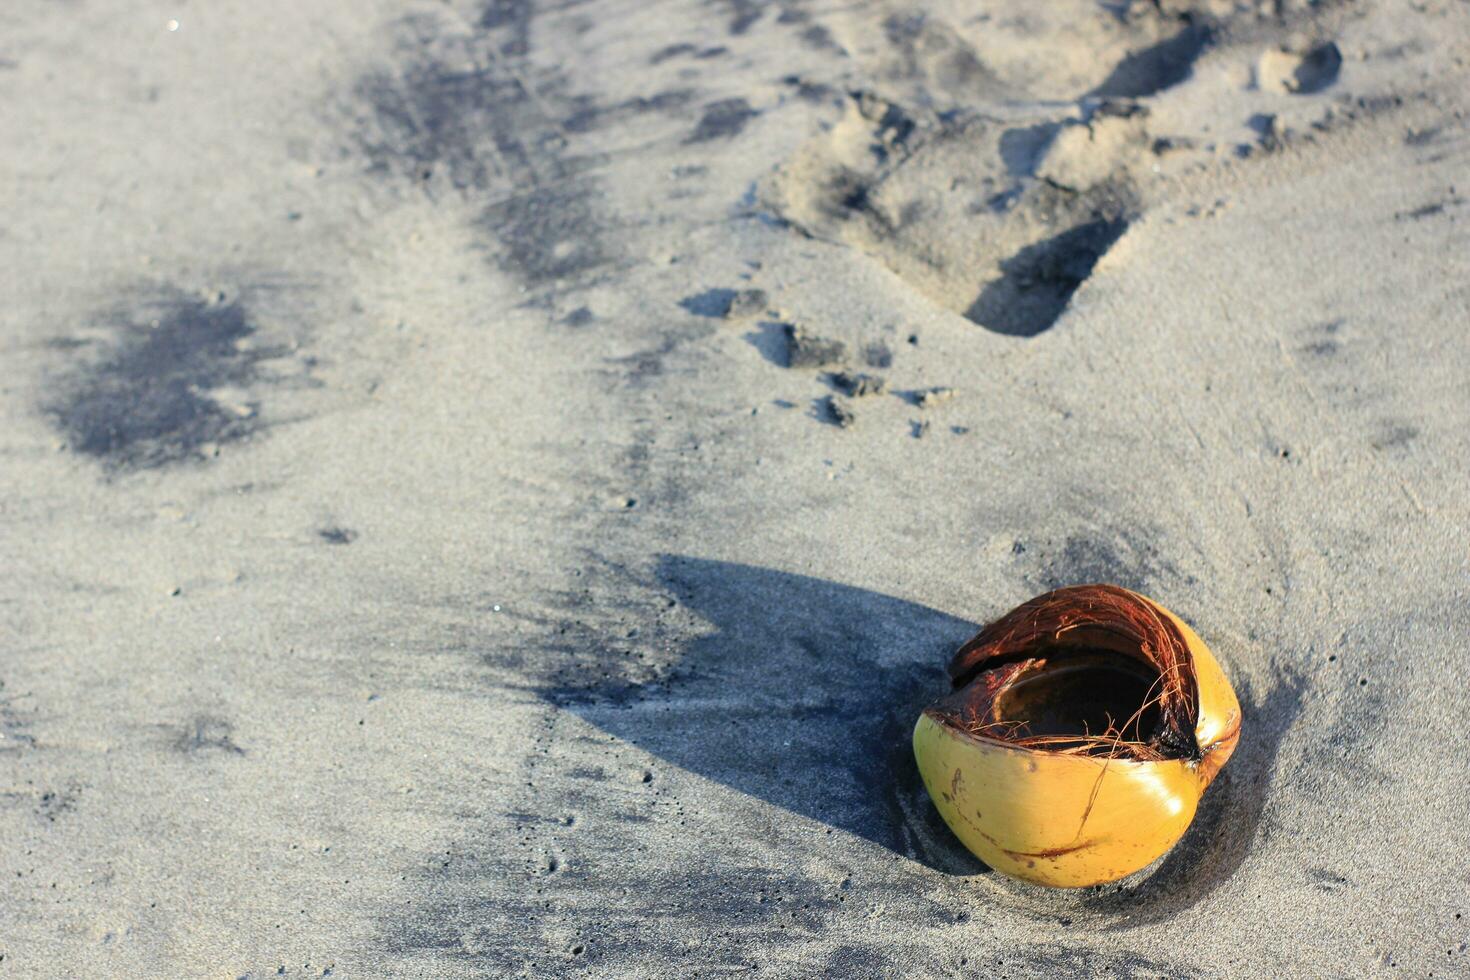 Coco conchas ese tener estado abrió acostado en el playa arena foto